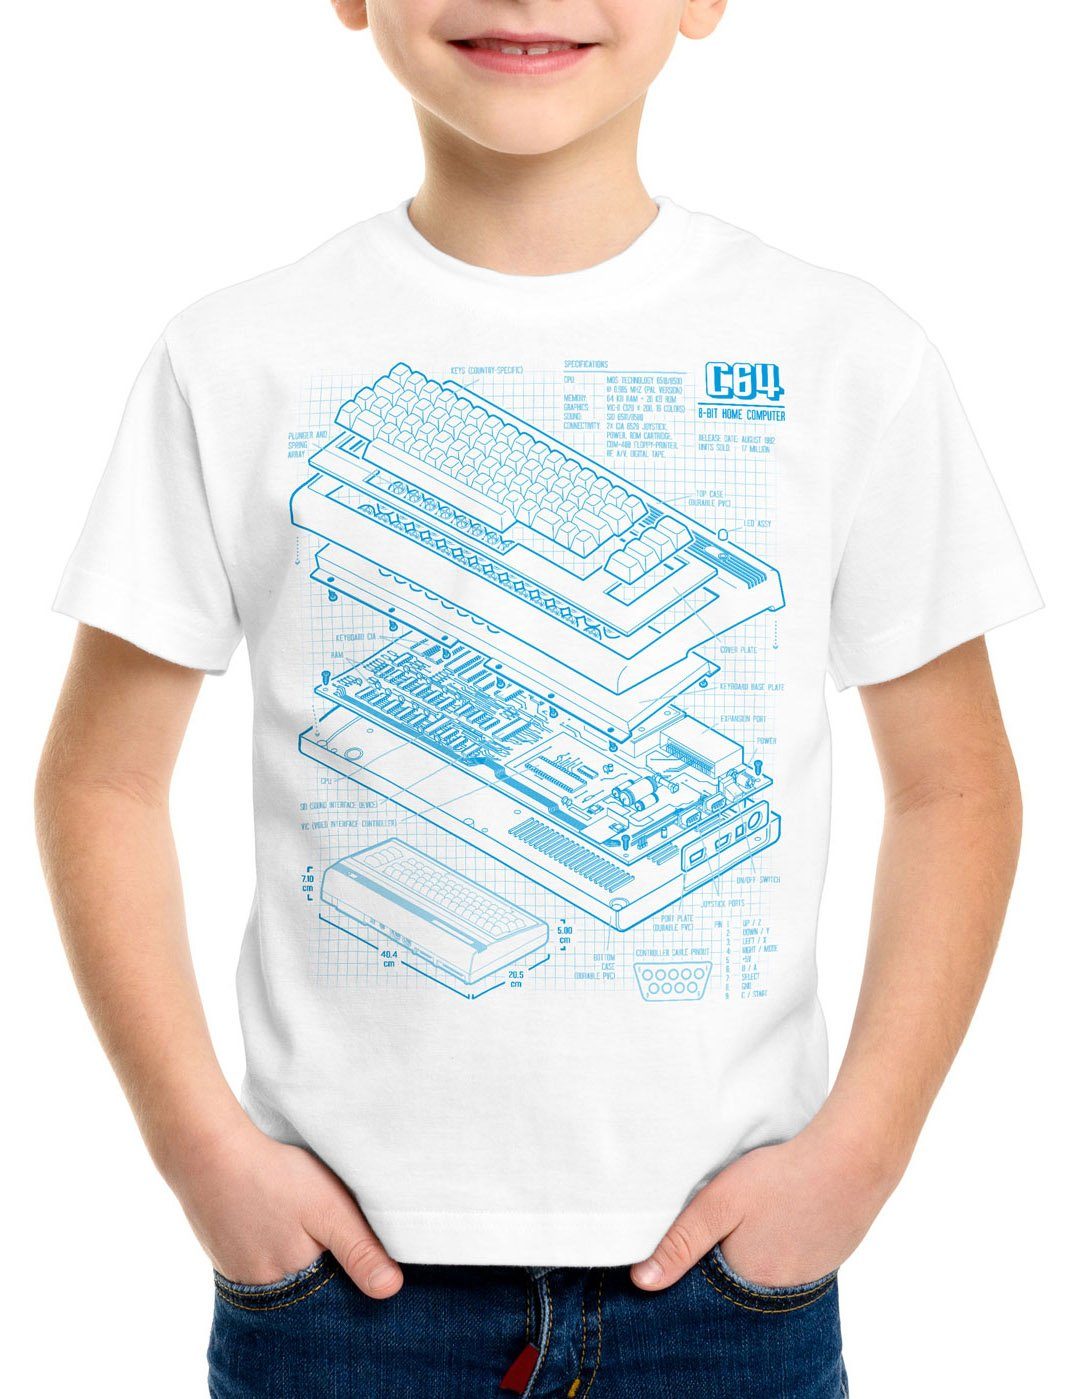 C64 classic T-Shirt Heimcomputer style3 gamer weiß Print-Shirt Kinder